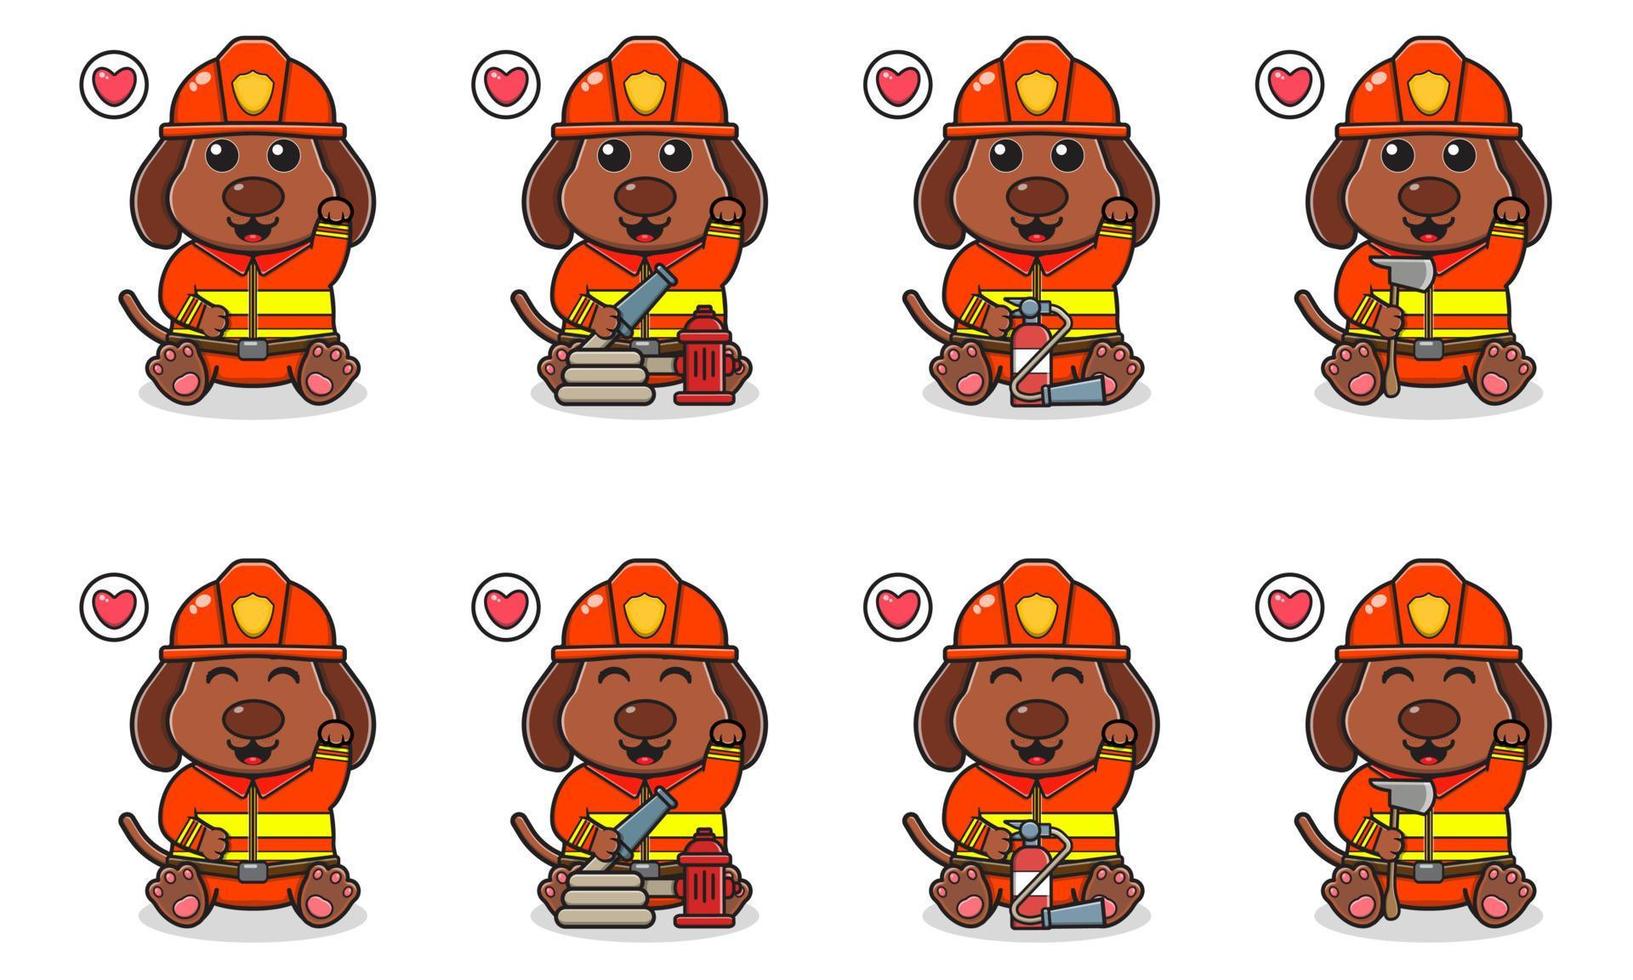 vektor illustration av söt sittande hund tecknad med brandman kostym och hand upp pose.